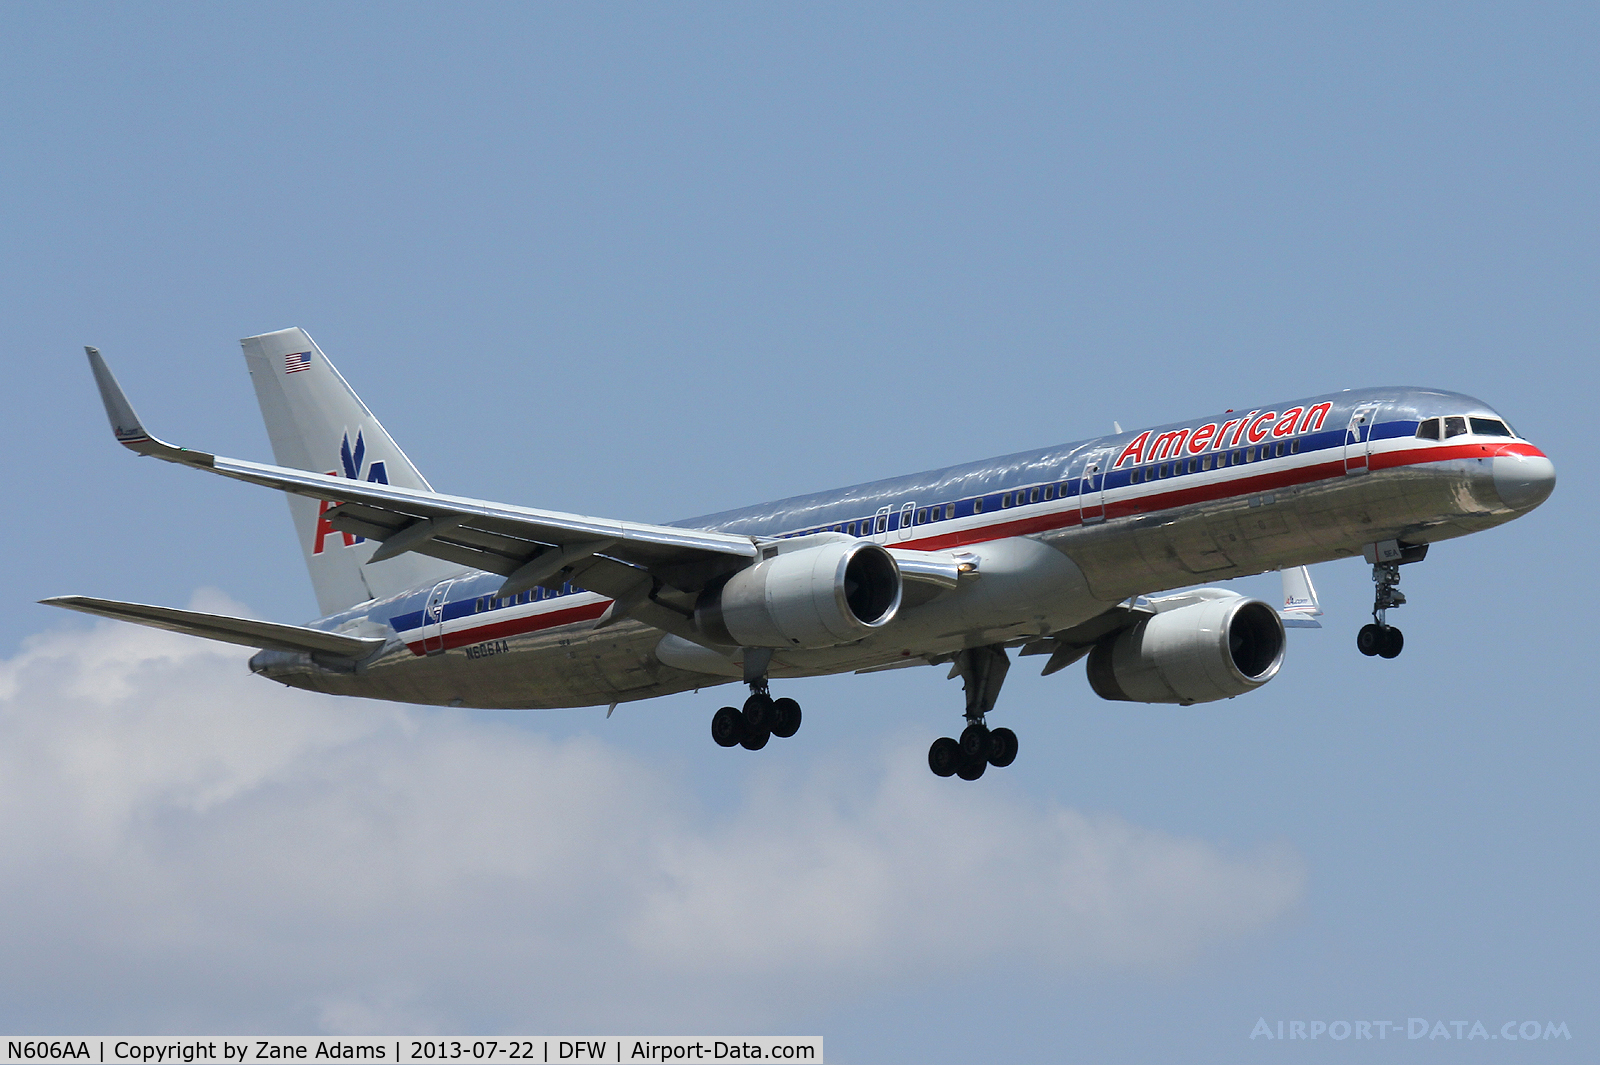 N606AA, 1996 Boeing 757-223 C/N 27057, Landing at DFW Airport